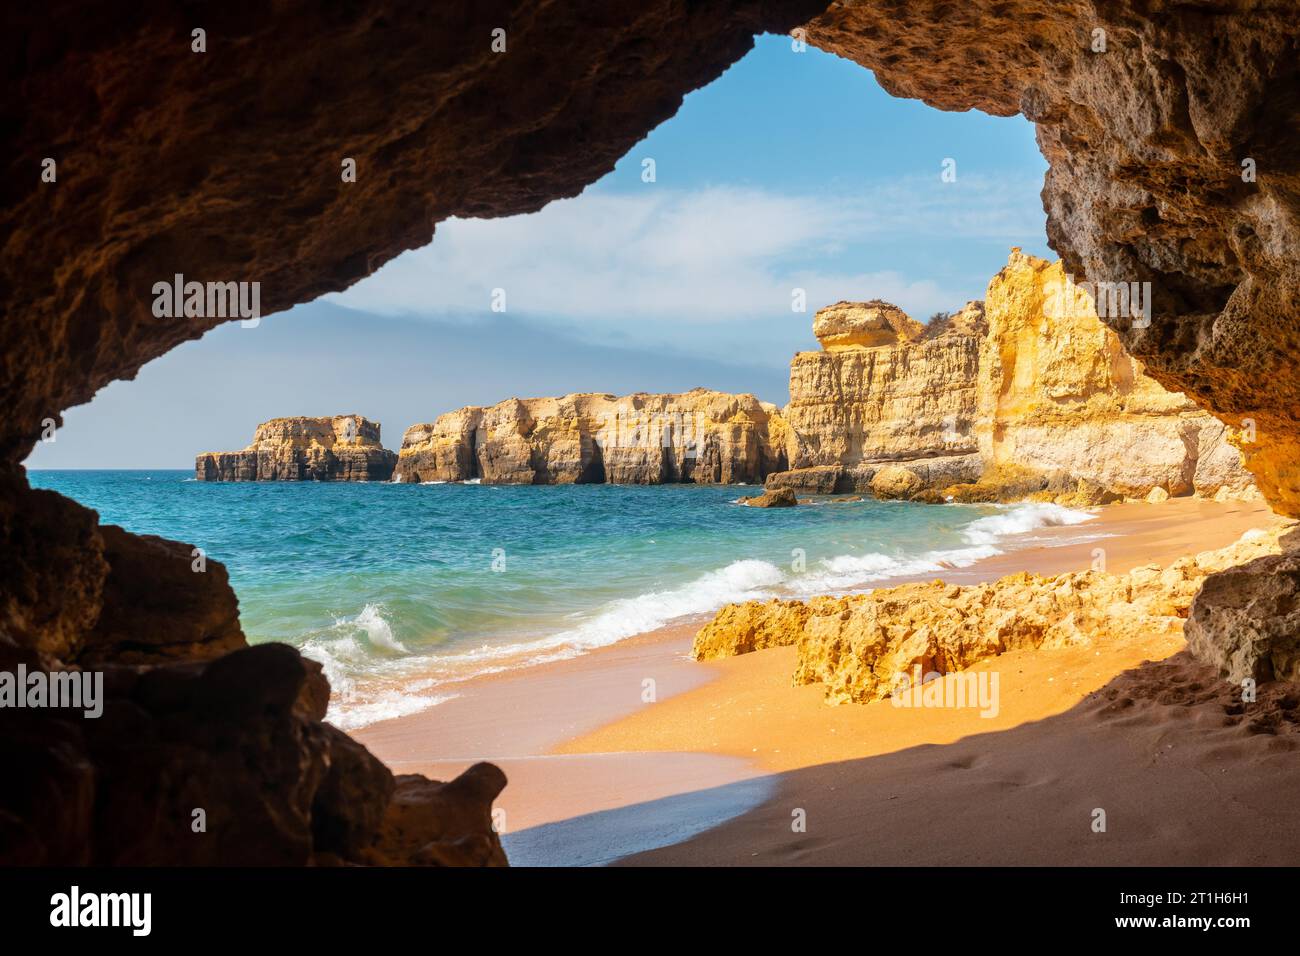 A natural summer beach cave at Praia da Coelha, Algarve, Albufeira. Portugal Stock Photo